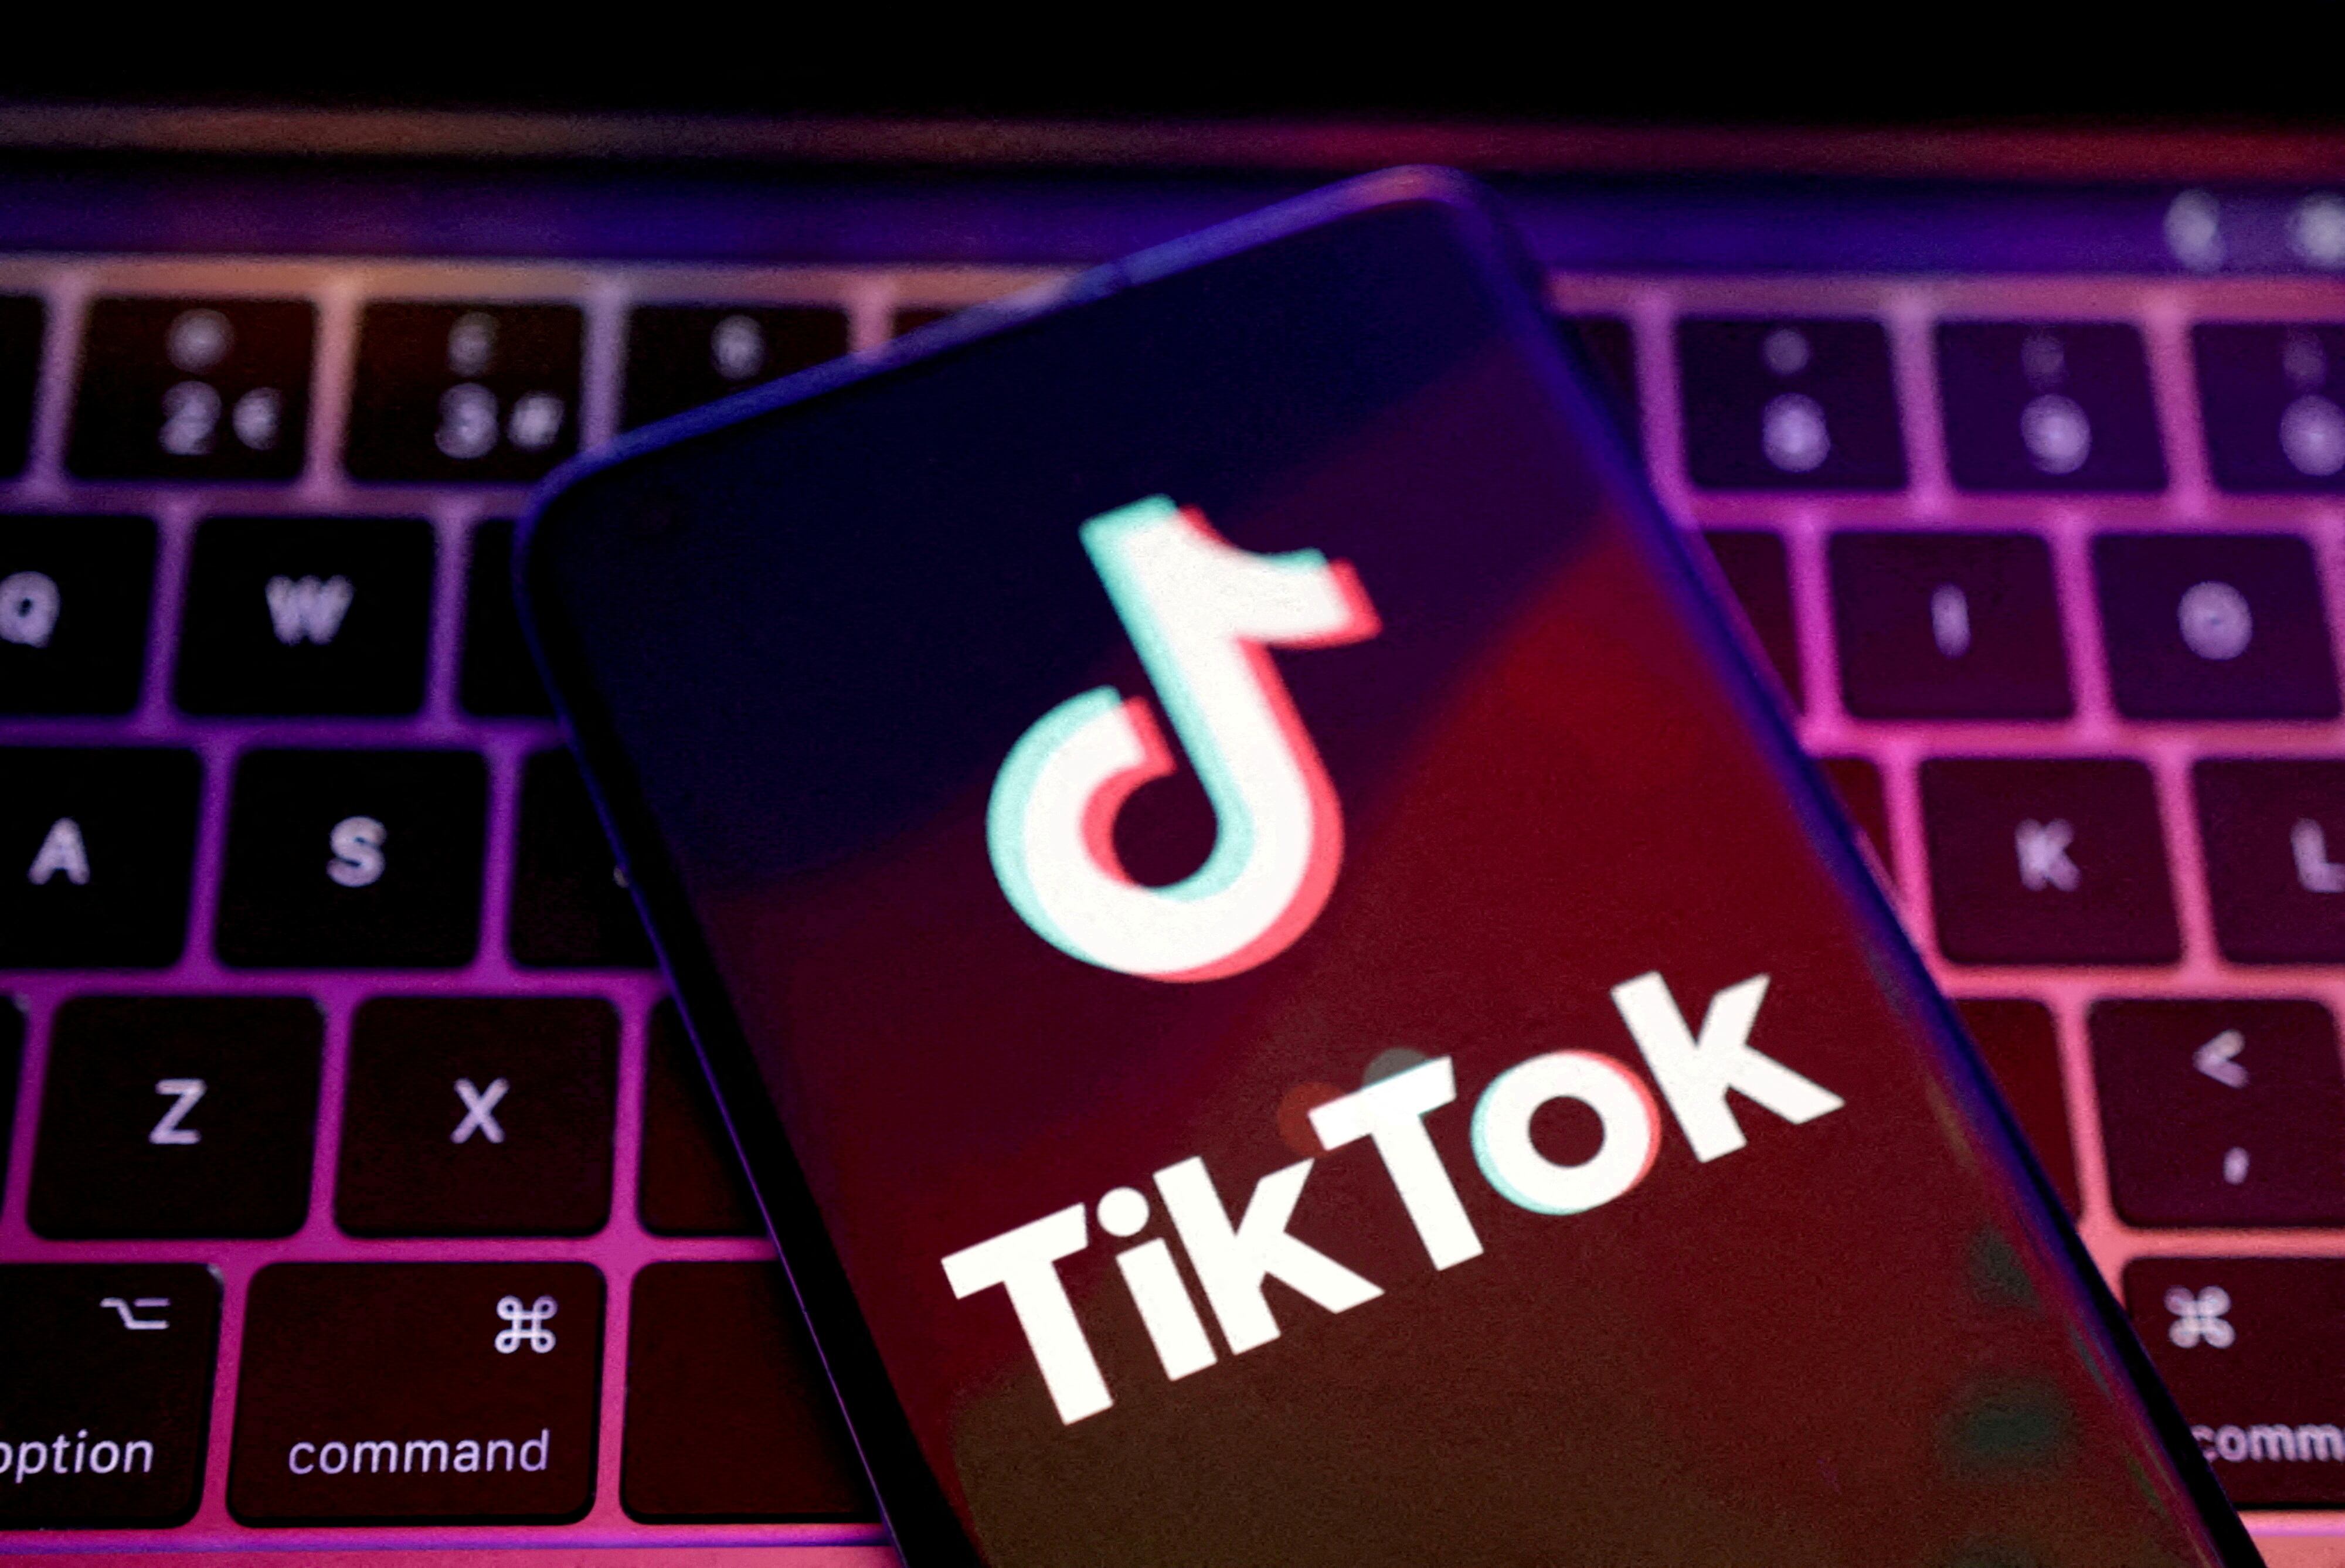 Redes sociales como TikTok son vulnerables a ofertas fraudulentas. (Foto: REUTERS/Dado Ruvic/Illustration)